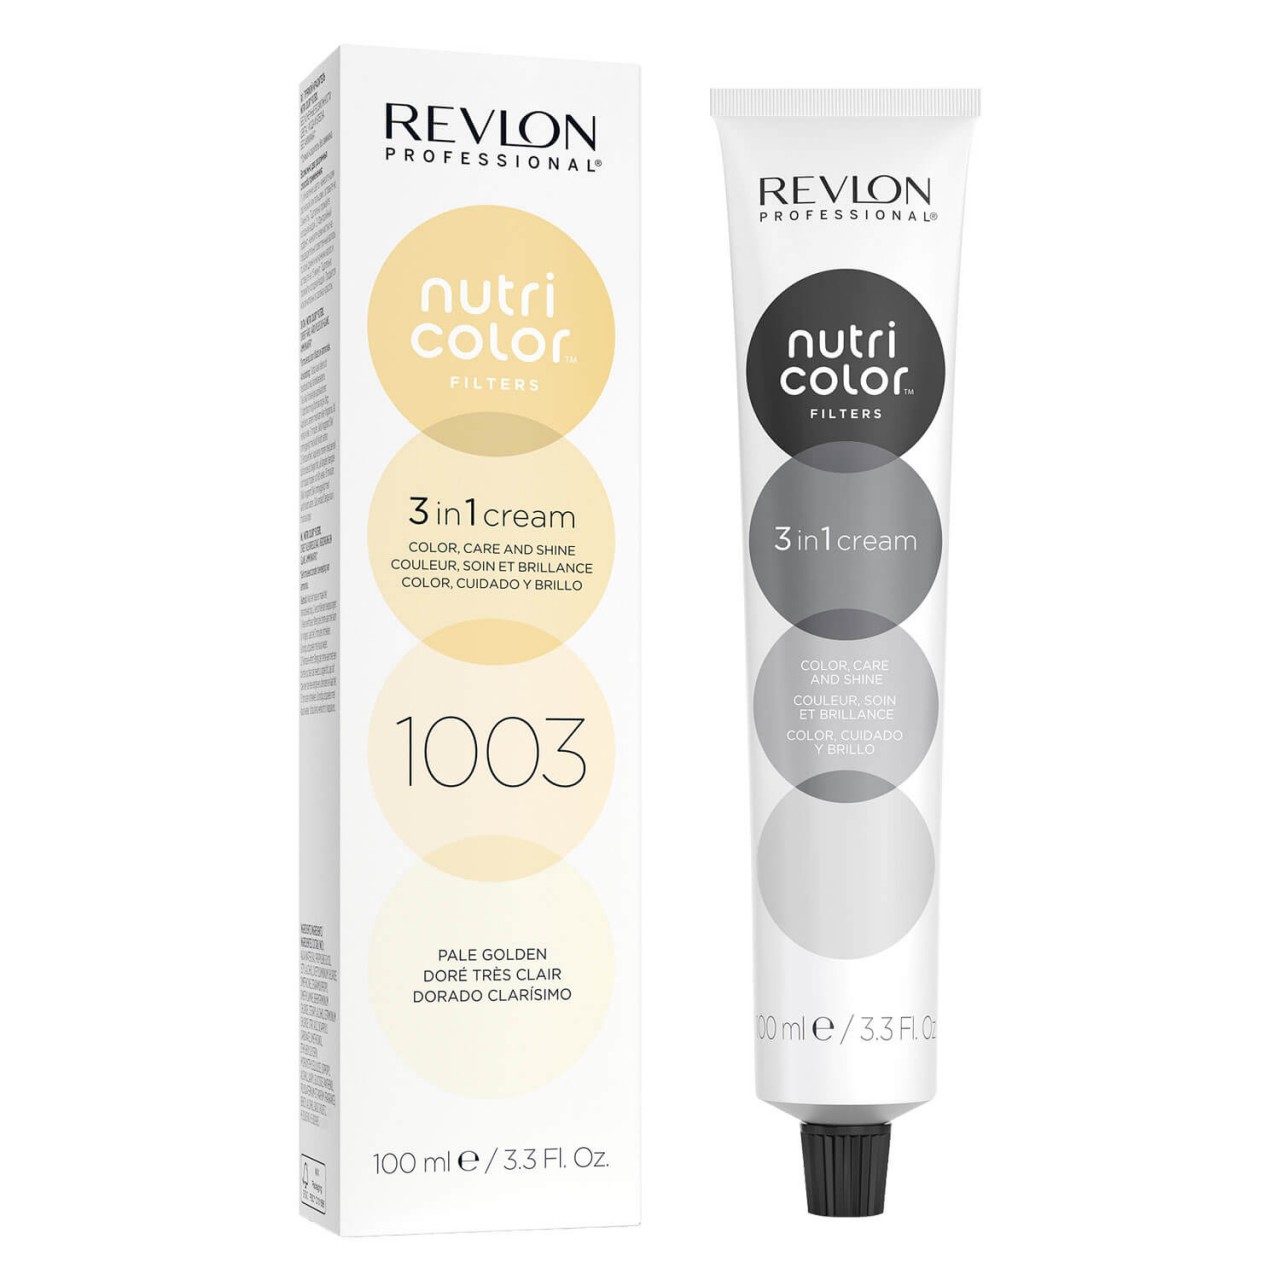 Nutri Color Creme - Pale Golden 1003 von Revlon Professional